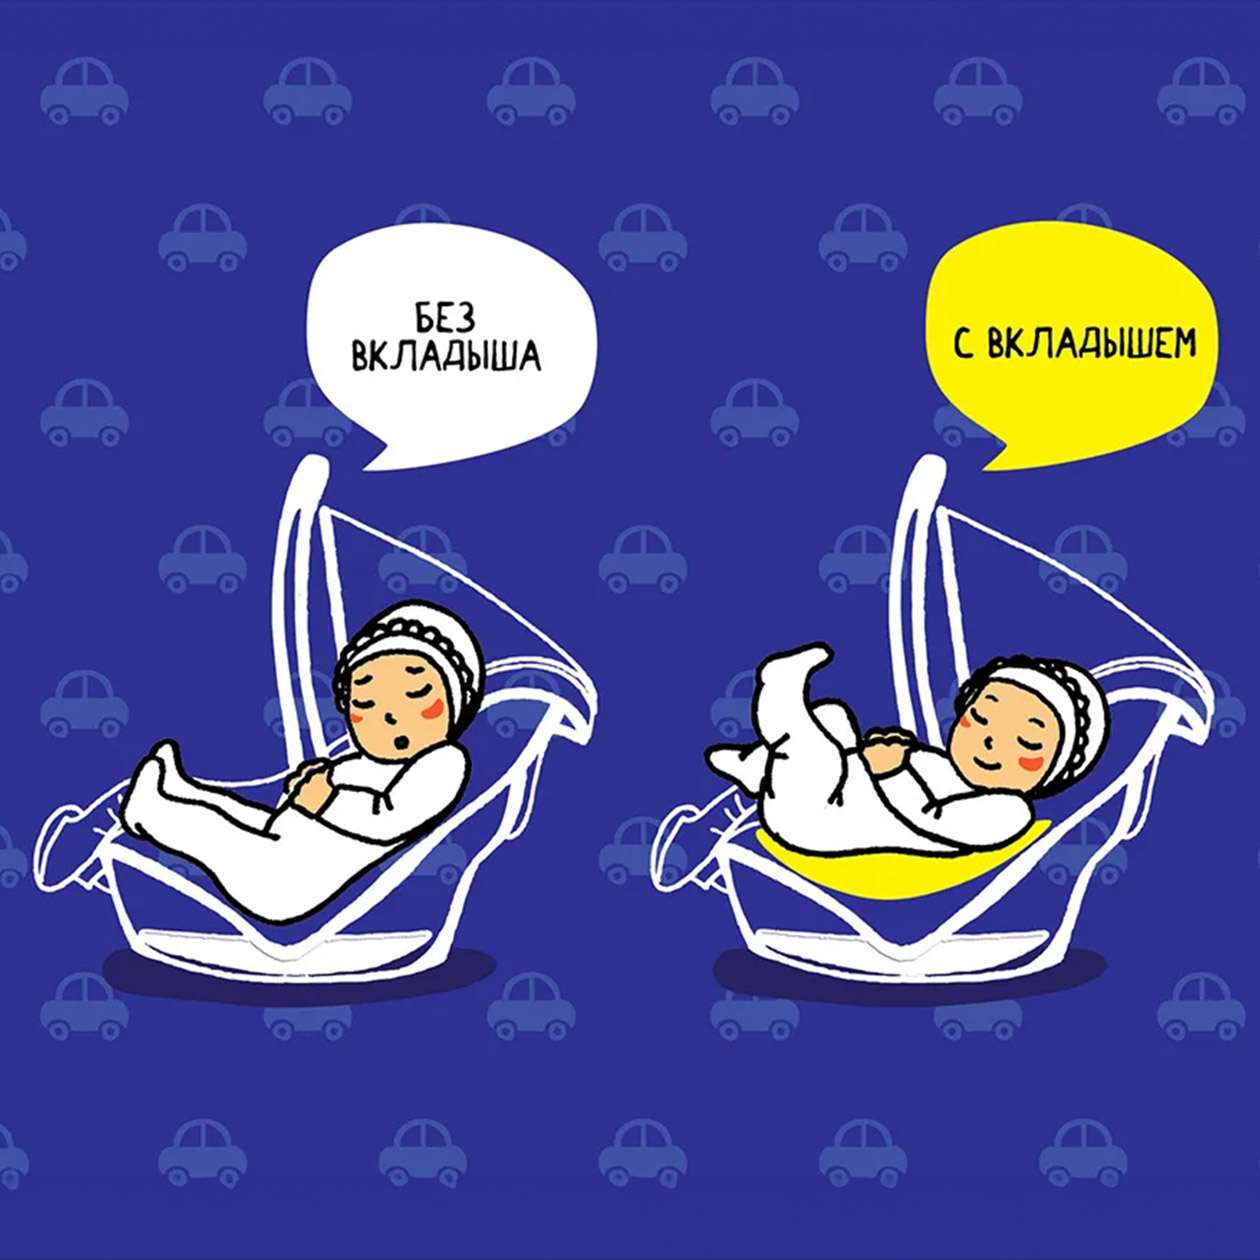 Его используют, чтобы младенец находился в анатомически правильном положении. Источник: ozon.ru